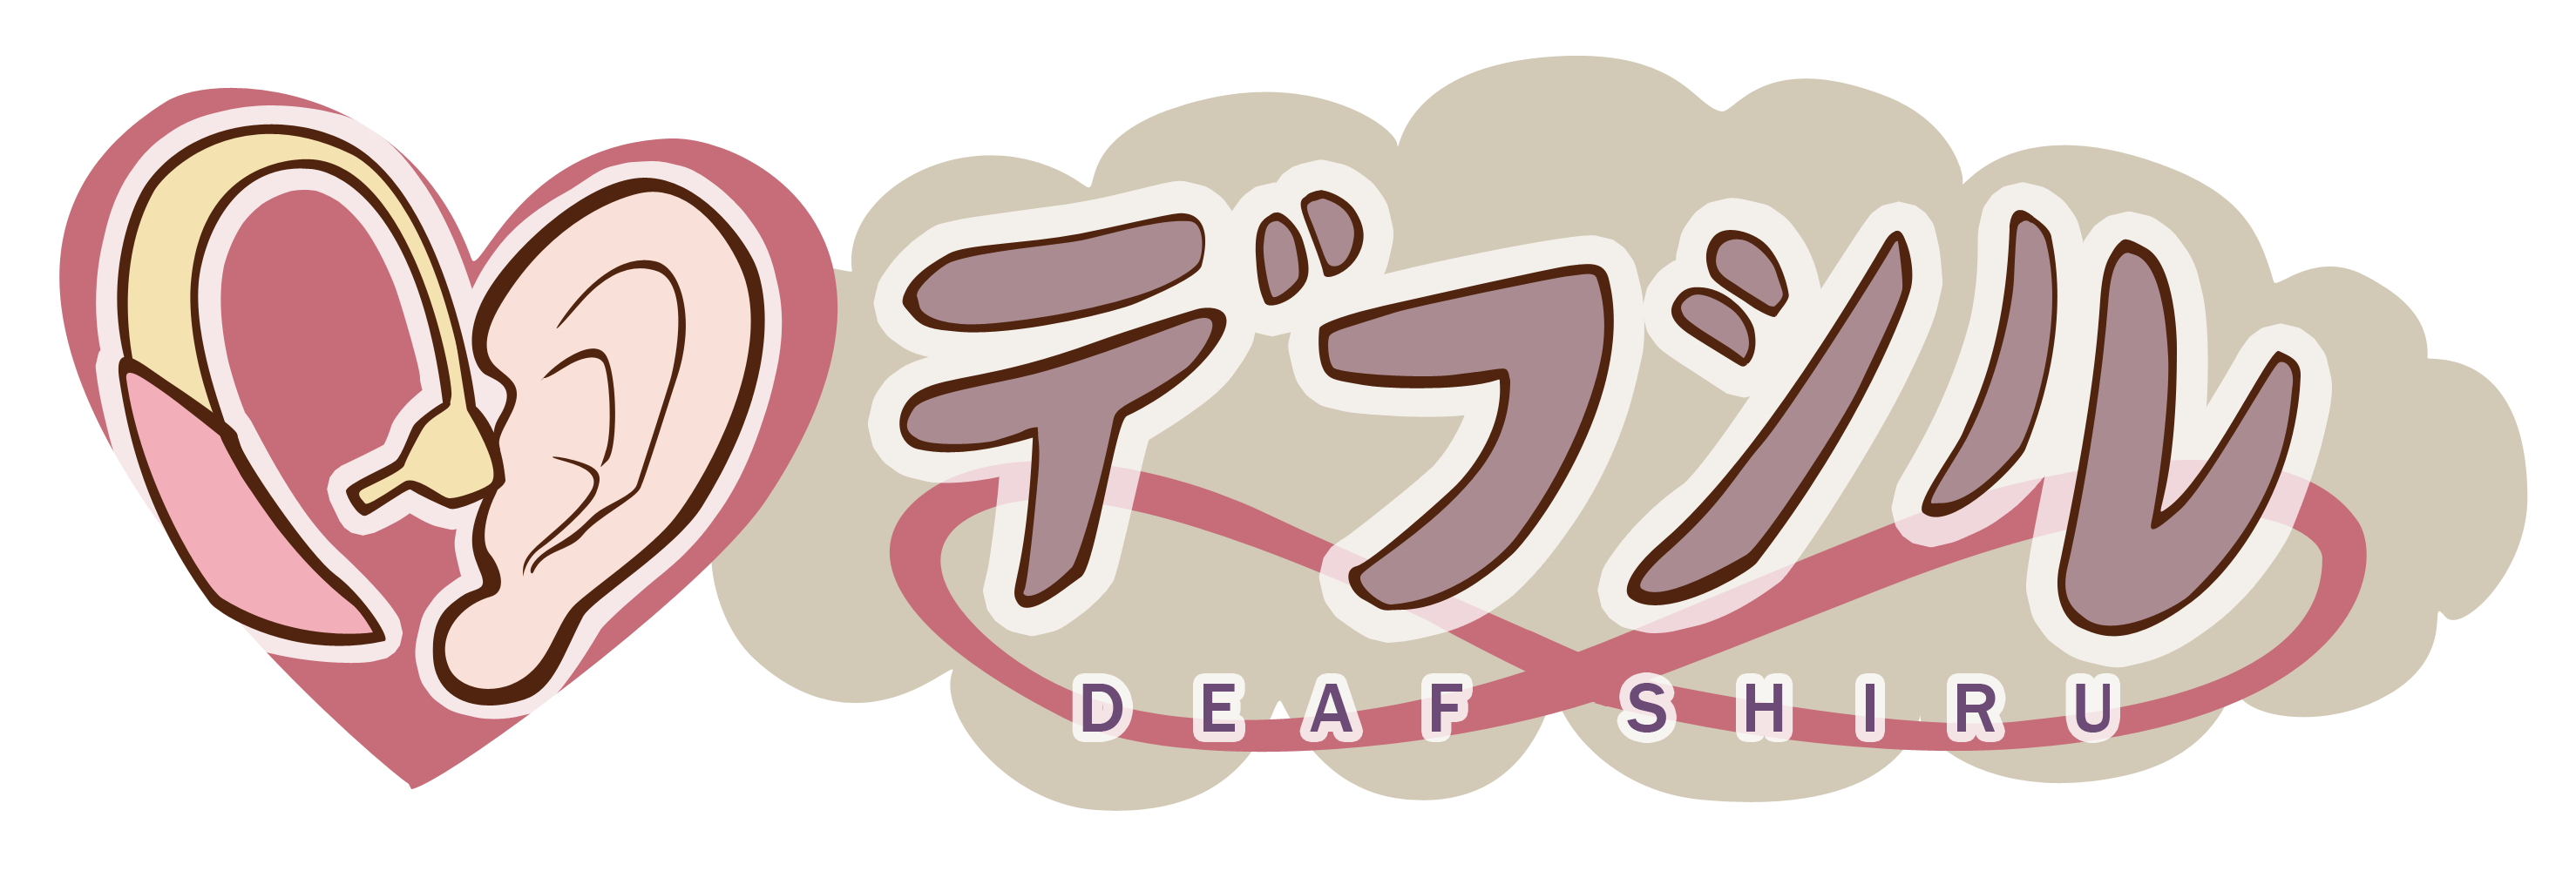 デフシル -DEAF SHIRU-